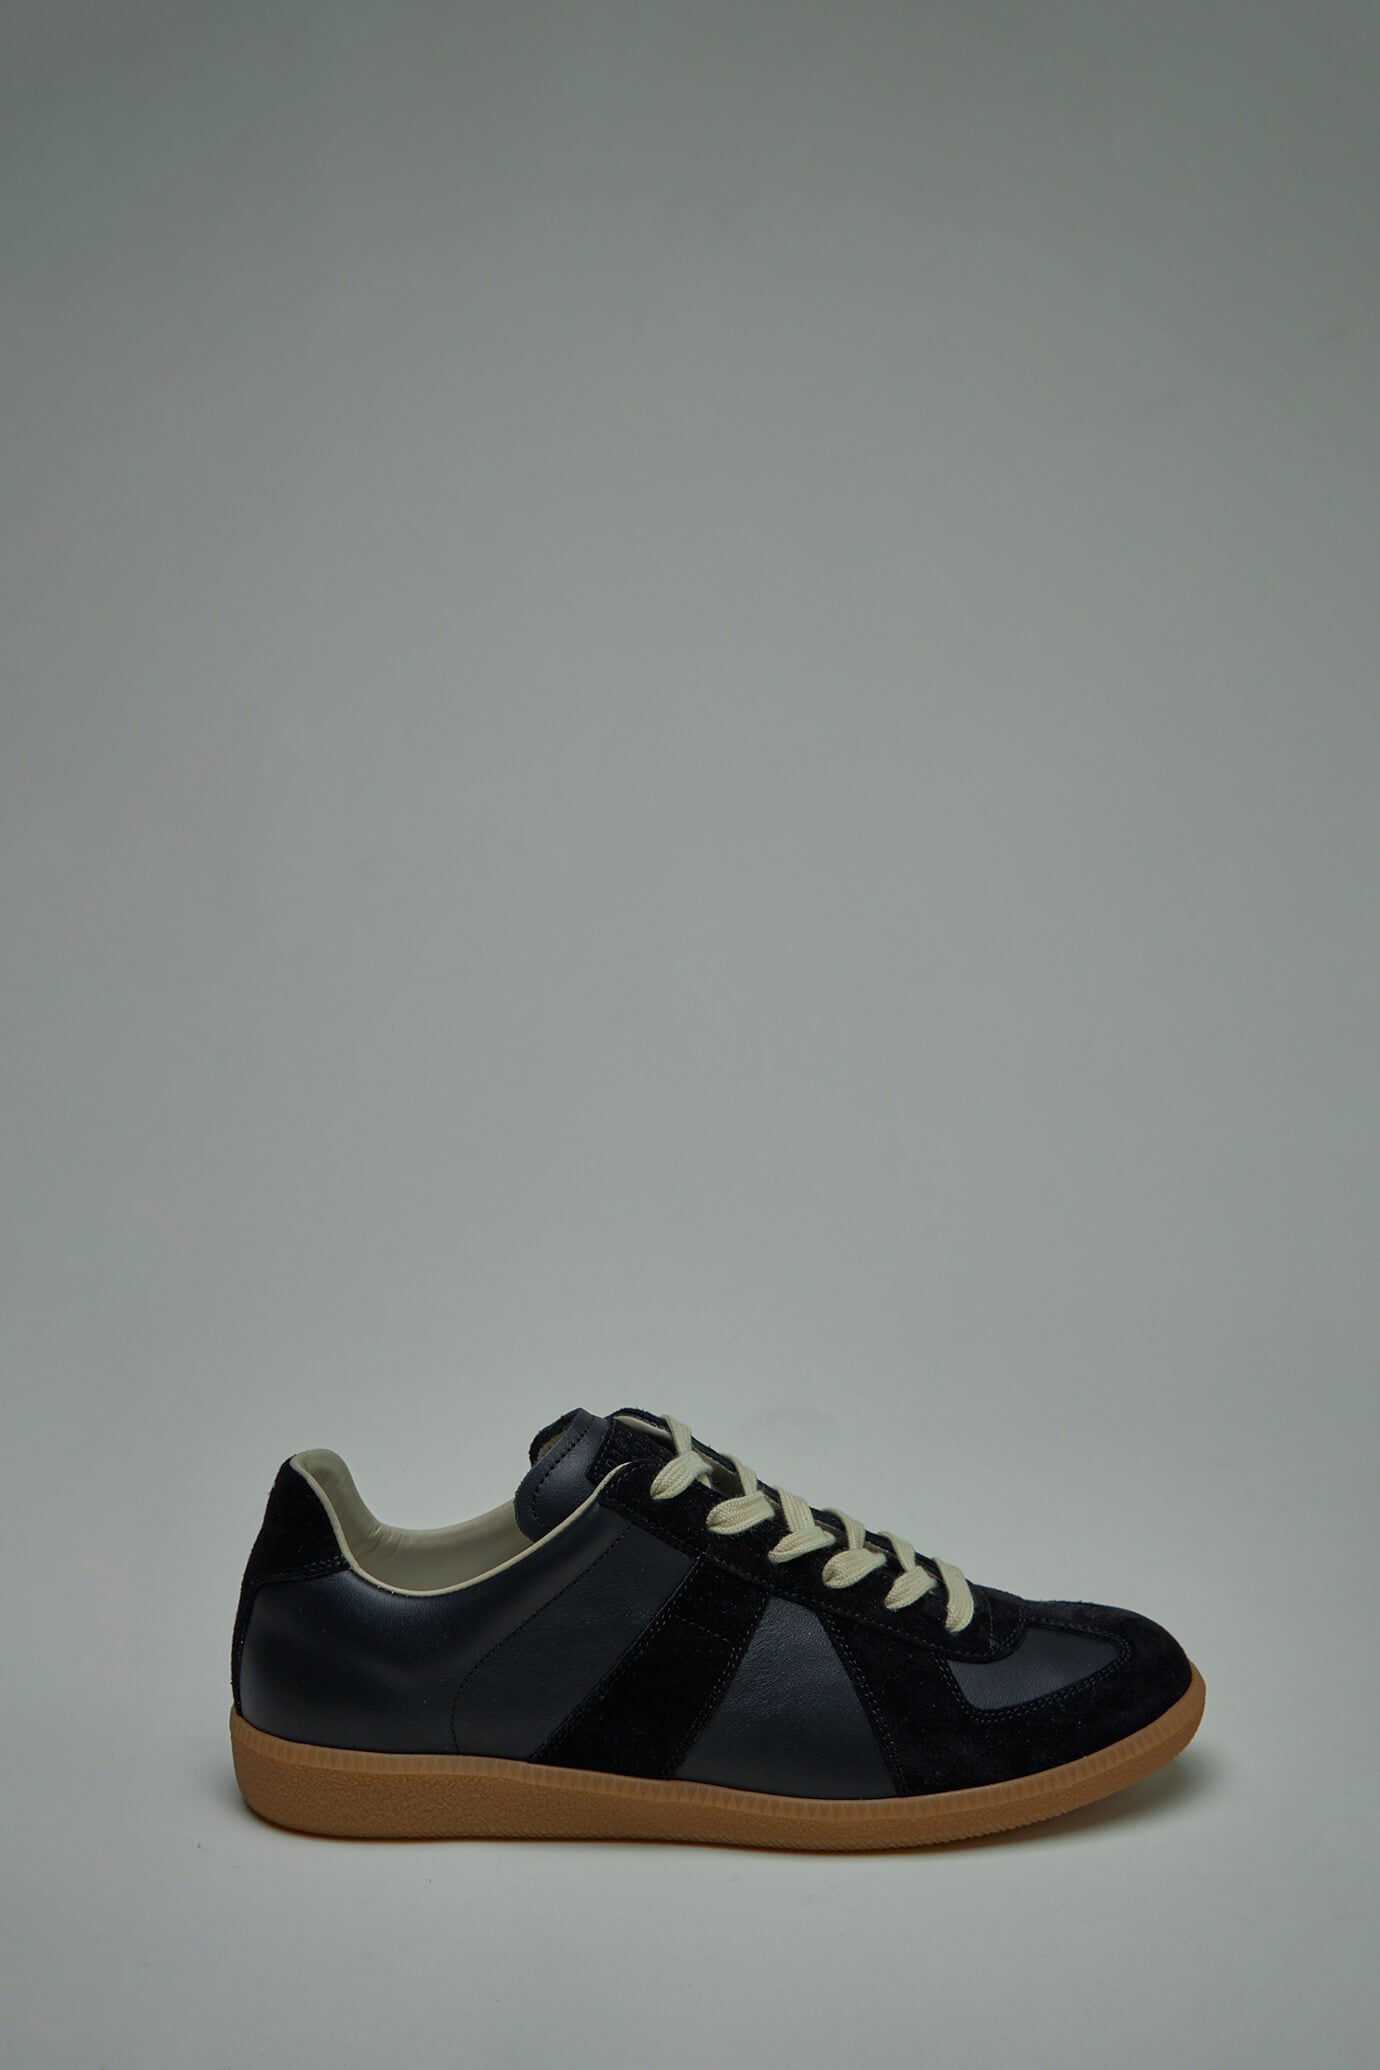 Maison Margiela Replica Shoes – LABELS